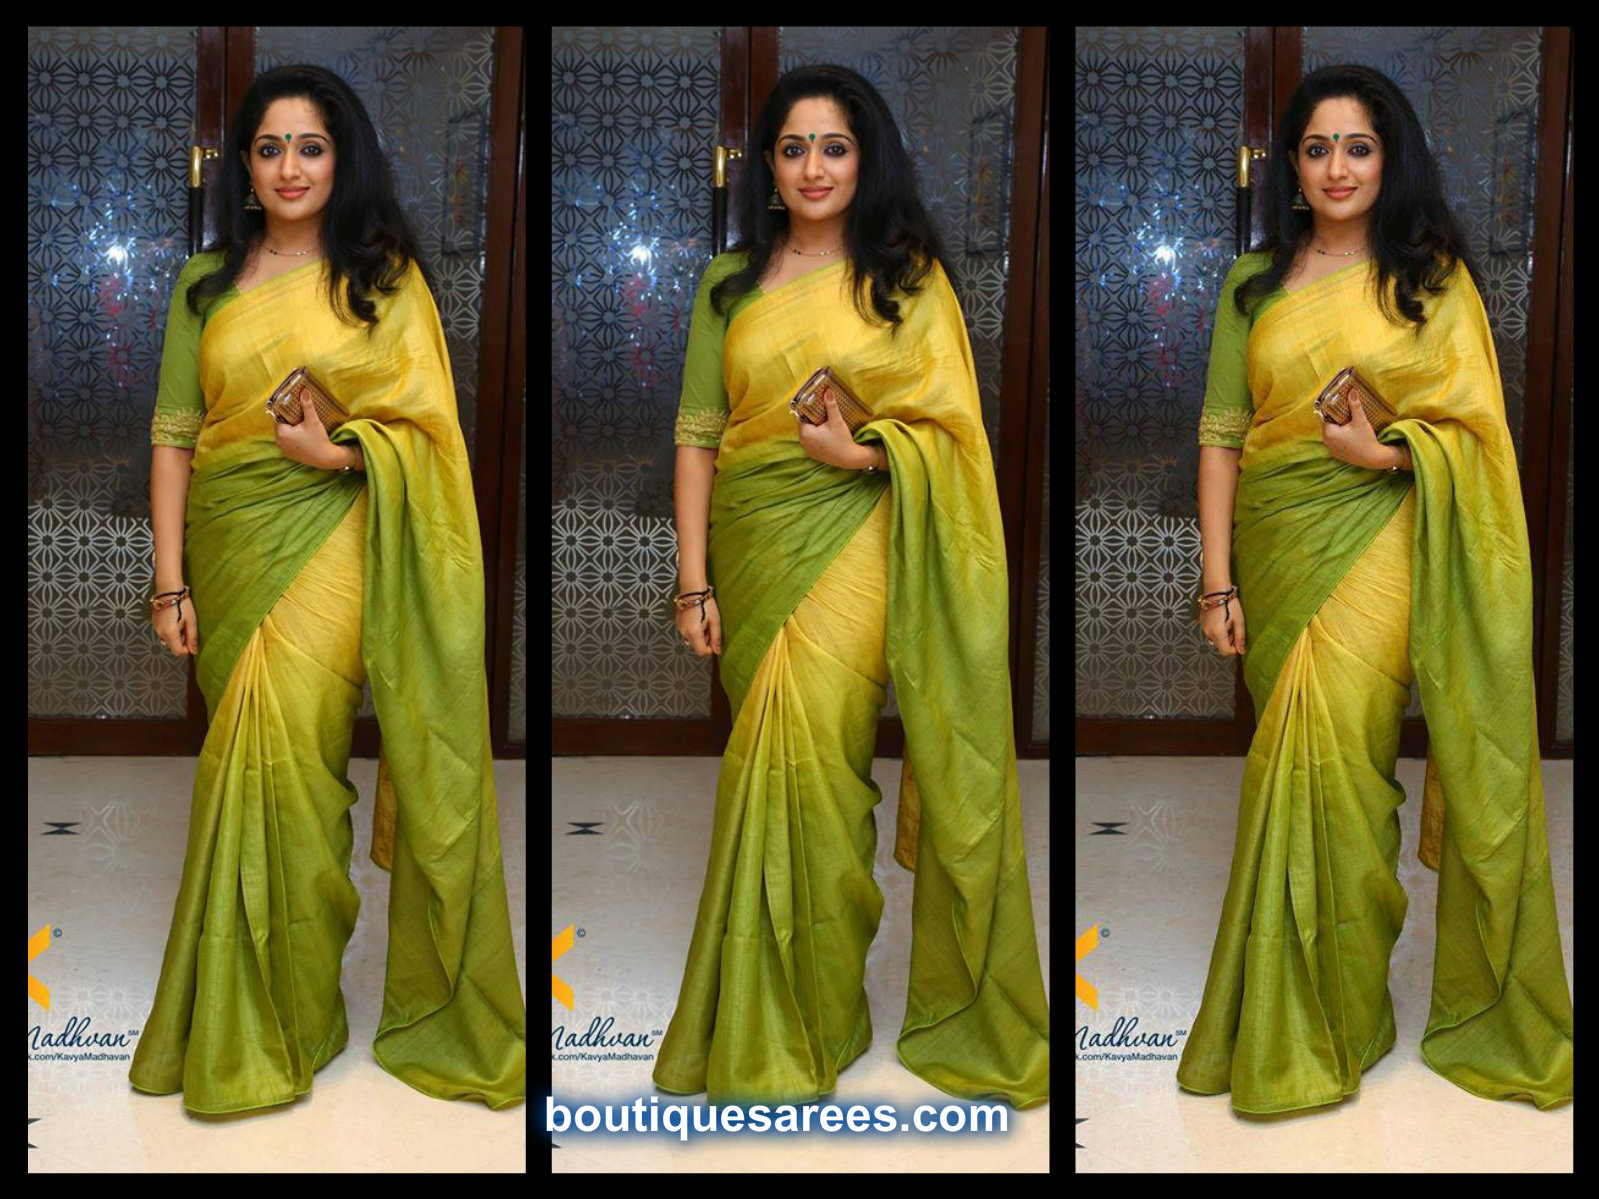 Kavya Madhavan in Double Shaded Saree